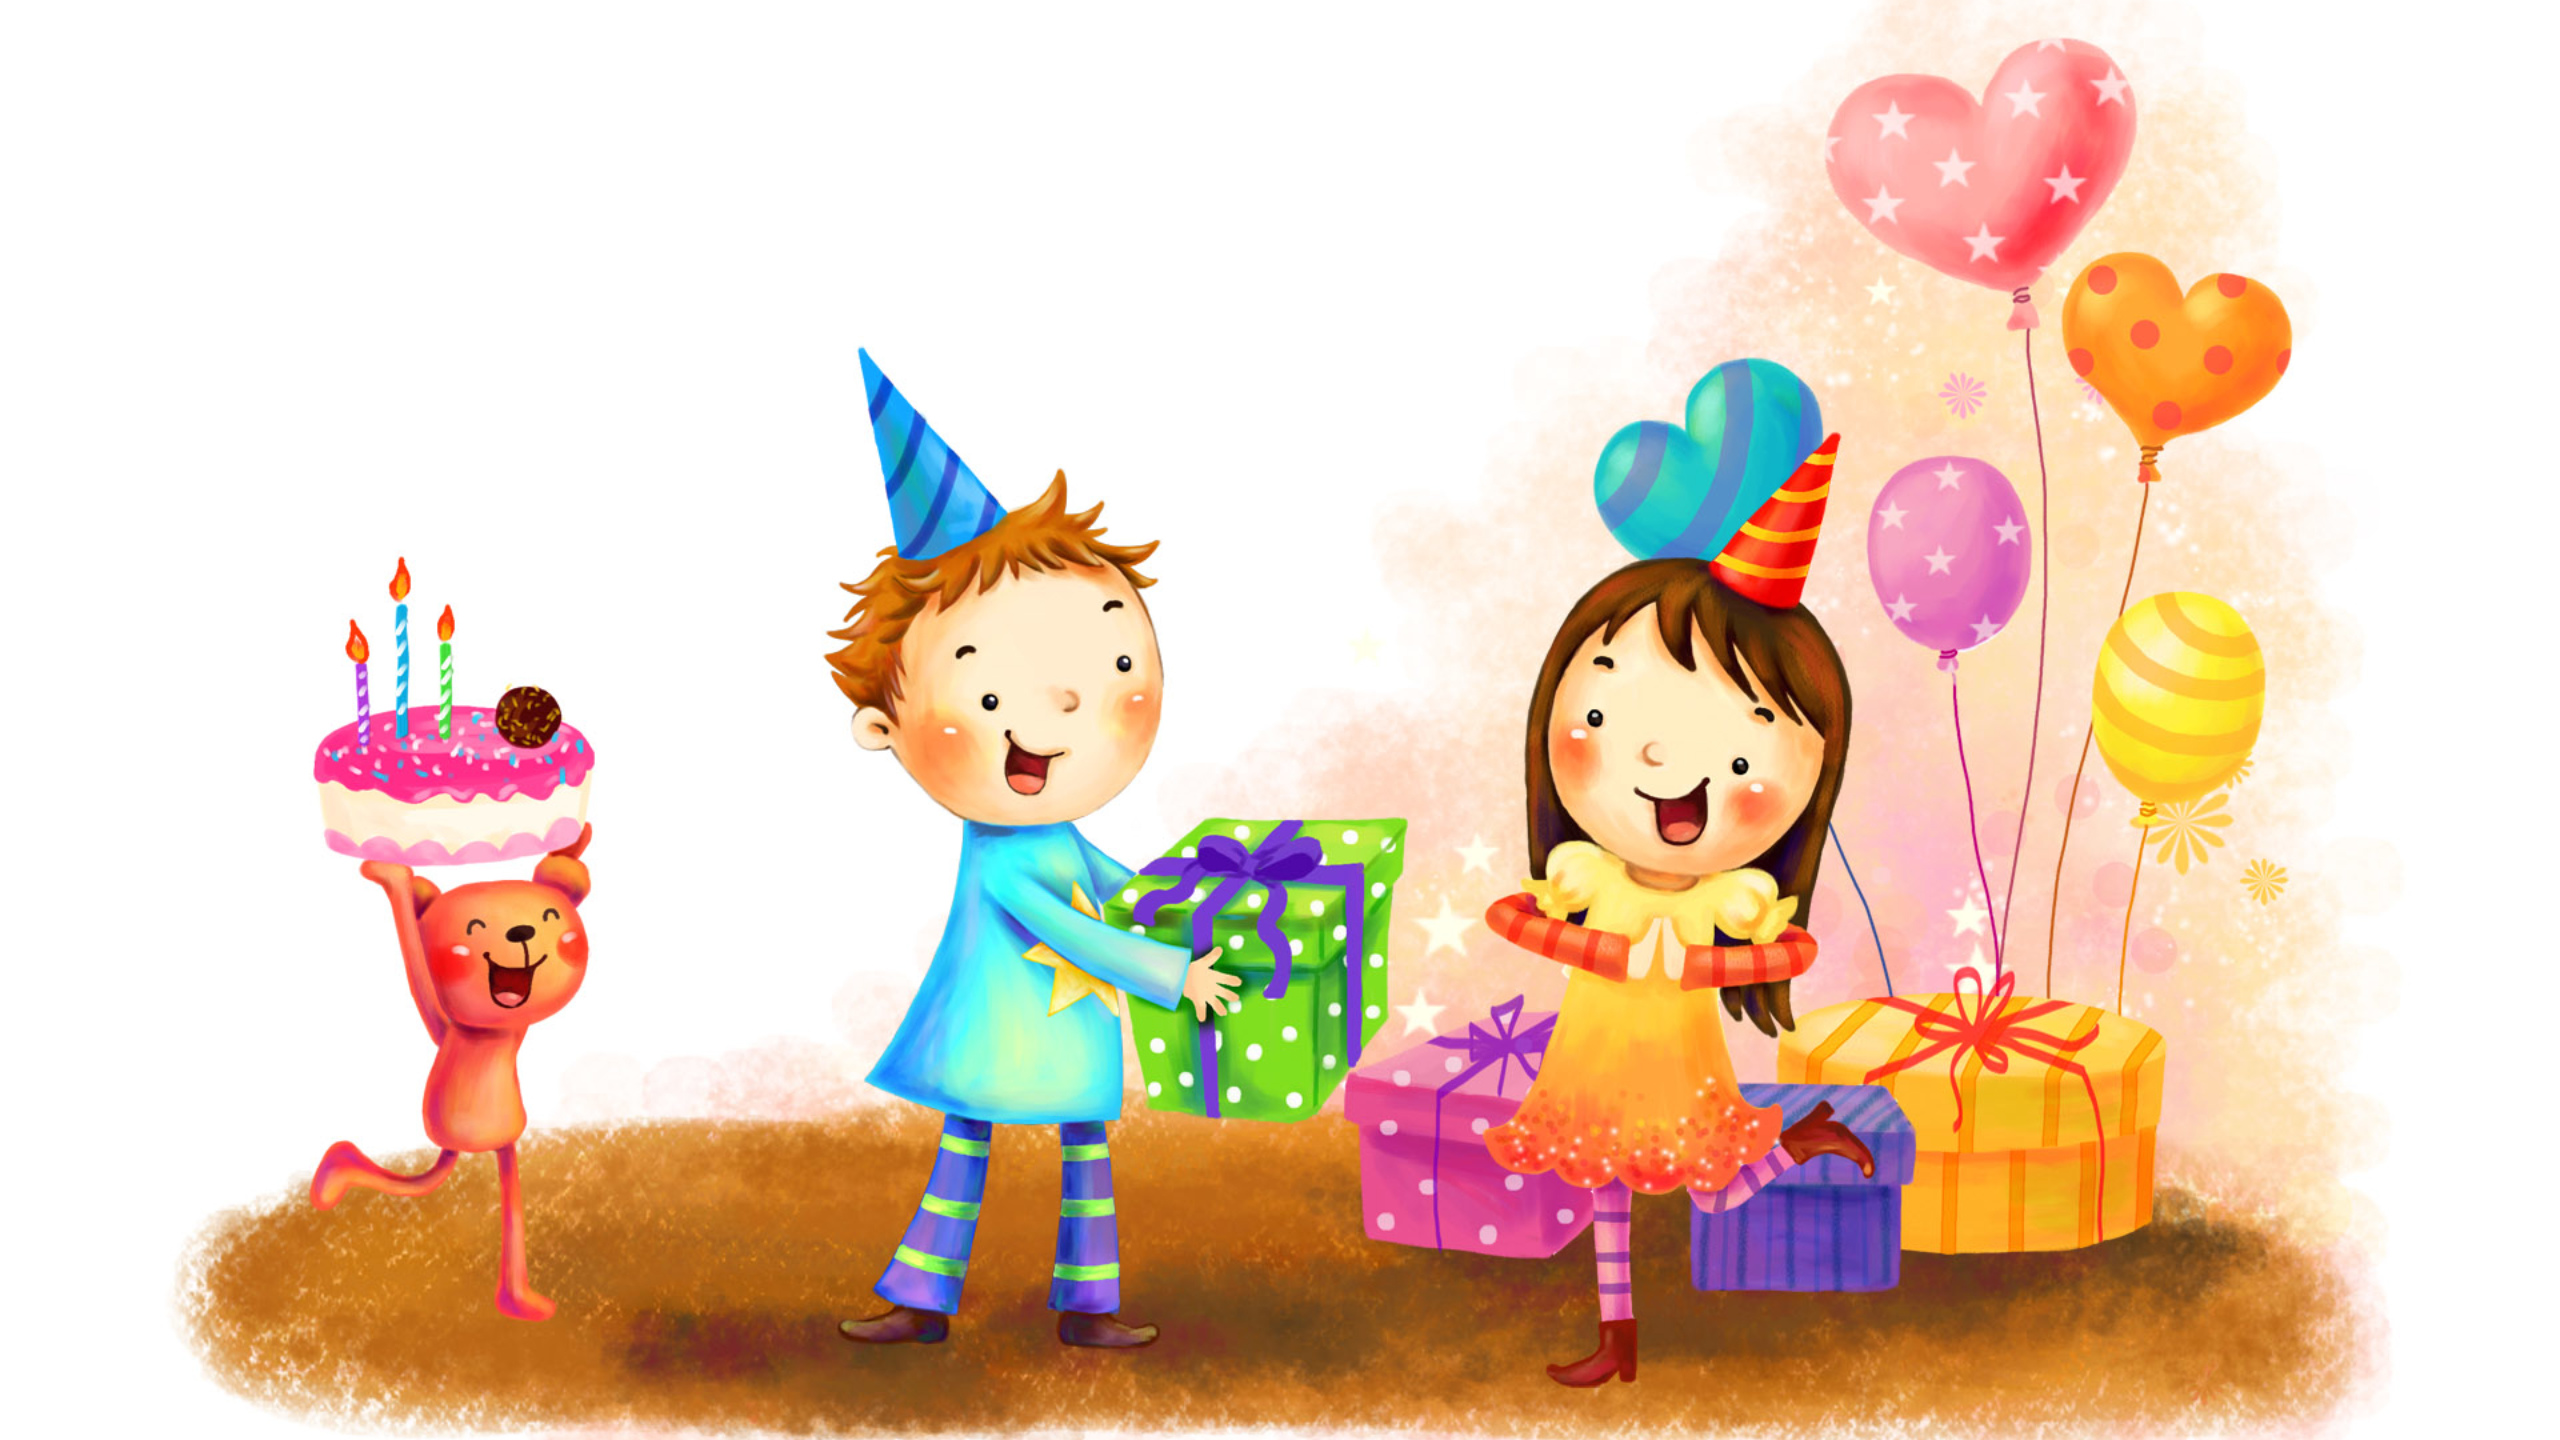 Мальчики поздравили девочек с праздником. С днем рождения иллюстрация. С днём рождения нарисованные картинки. С днём рождения девочке. Картинки с днём рождения детские.